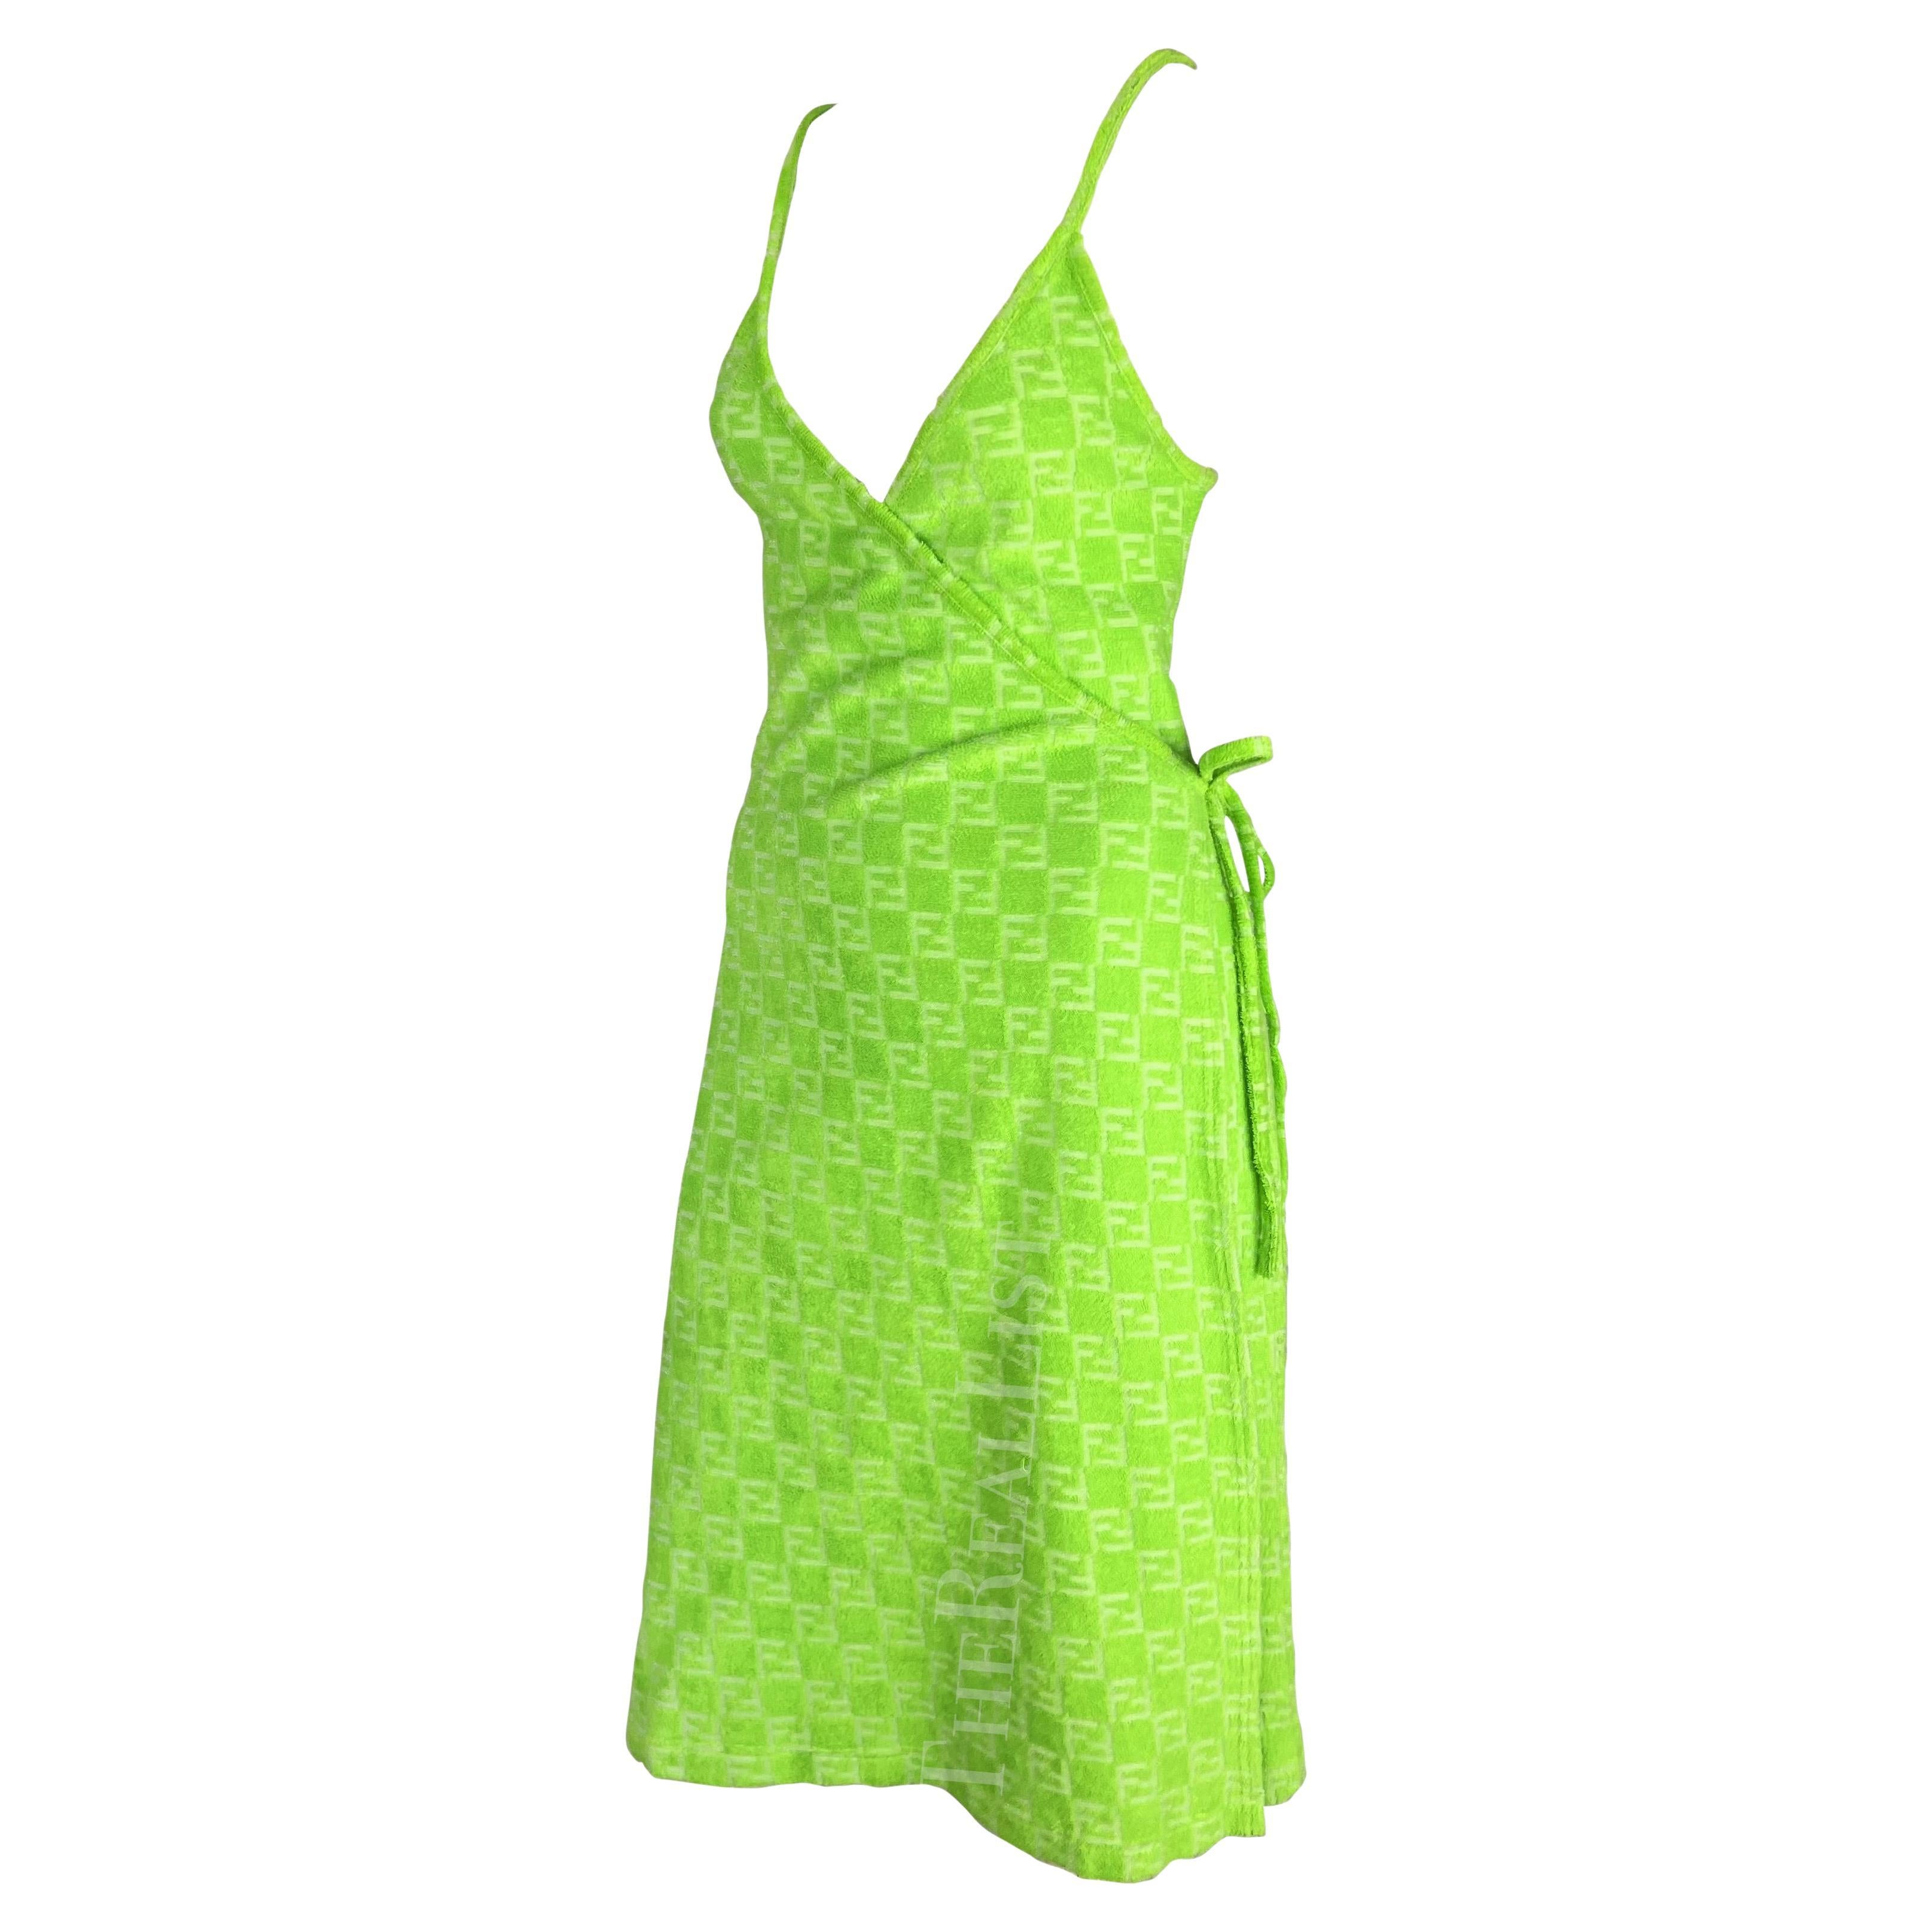 Présentation d'une incroyable robe portefeuille Fendi vert fluo, dessinée par Karl Lagerfeld. Datant des années 1990, cette robe portefeuille est entièrement réalisée en tissu éponge et porte le monogramme Fendi 'FF' en relief. Simple et chic, cette